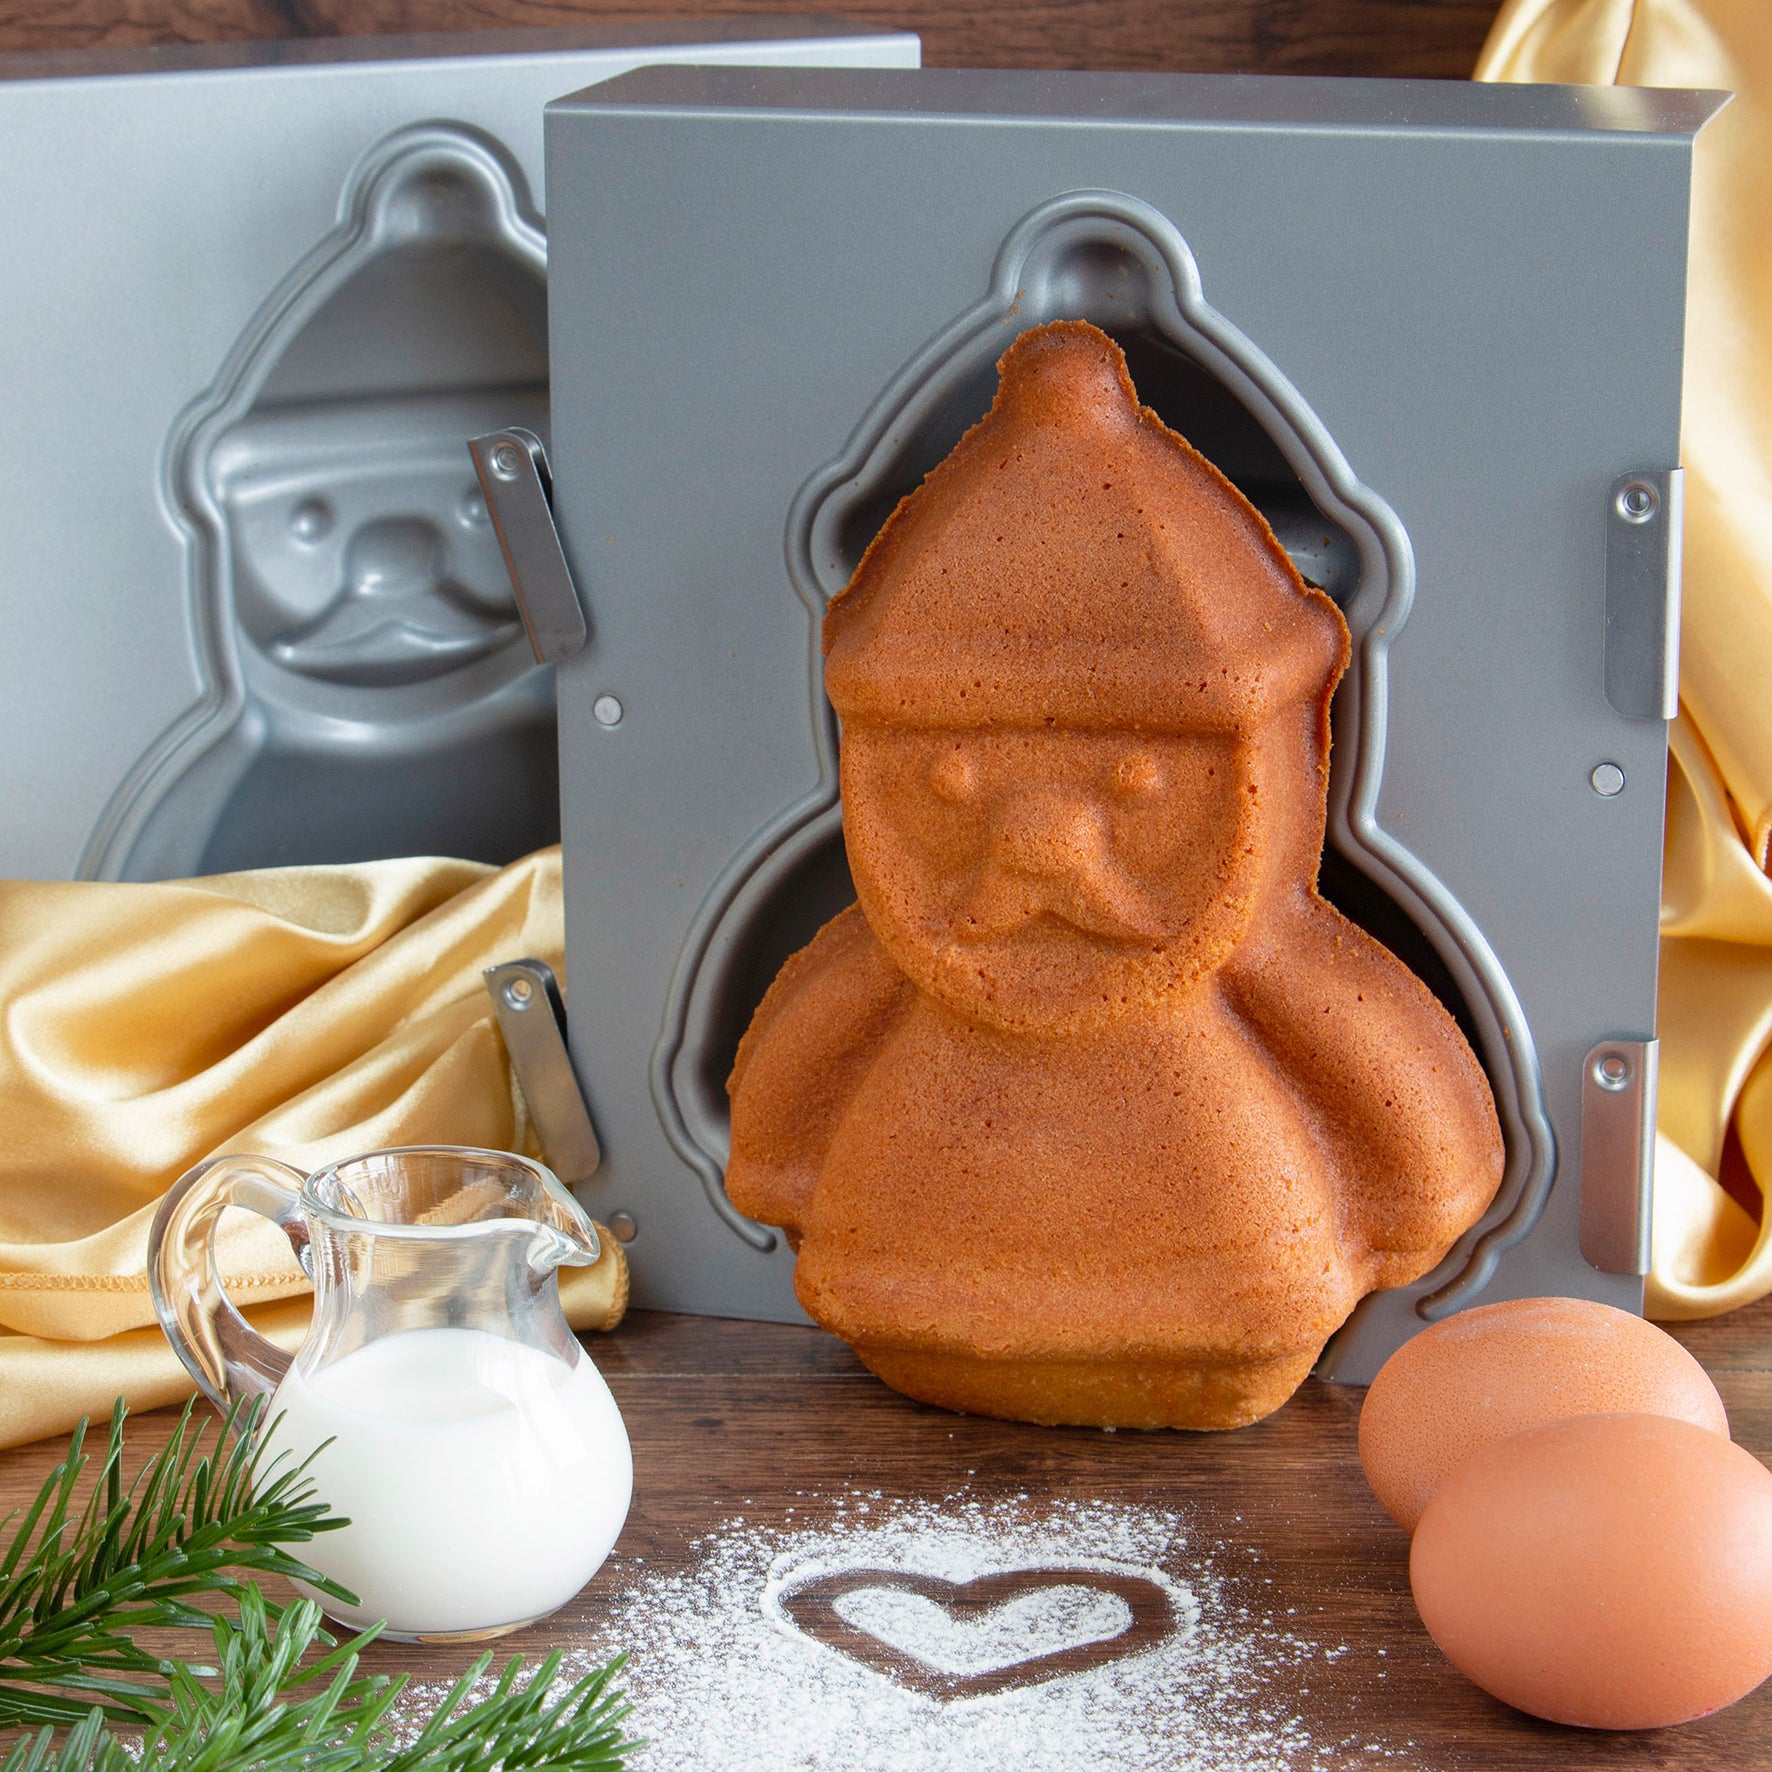 STÄDTER We love baking Snowman – 3D Cake pan – Alko Kitchenware